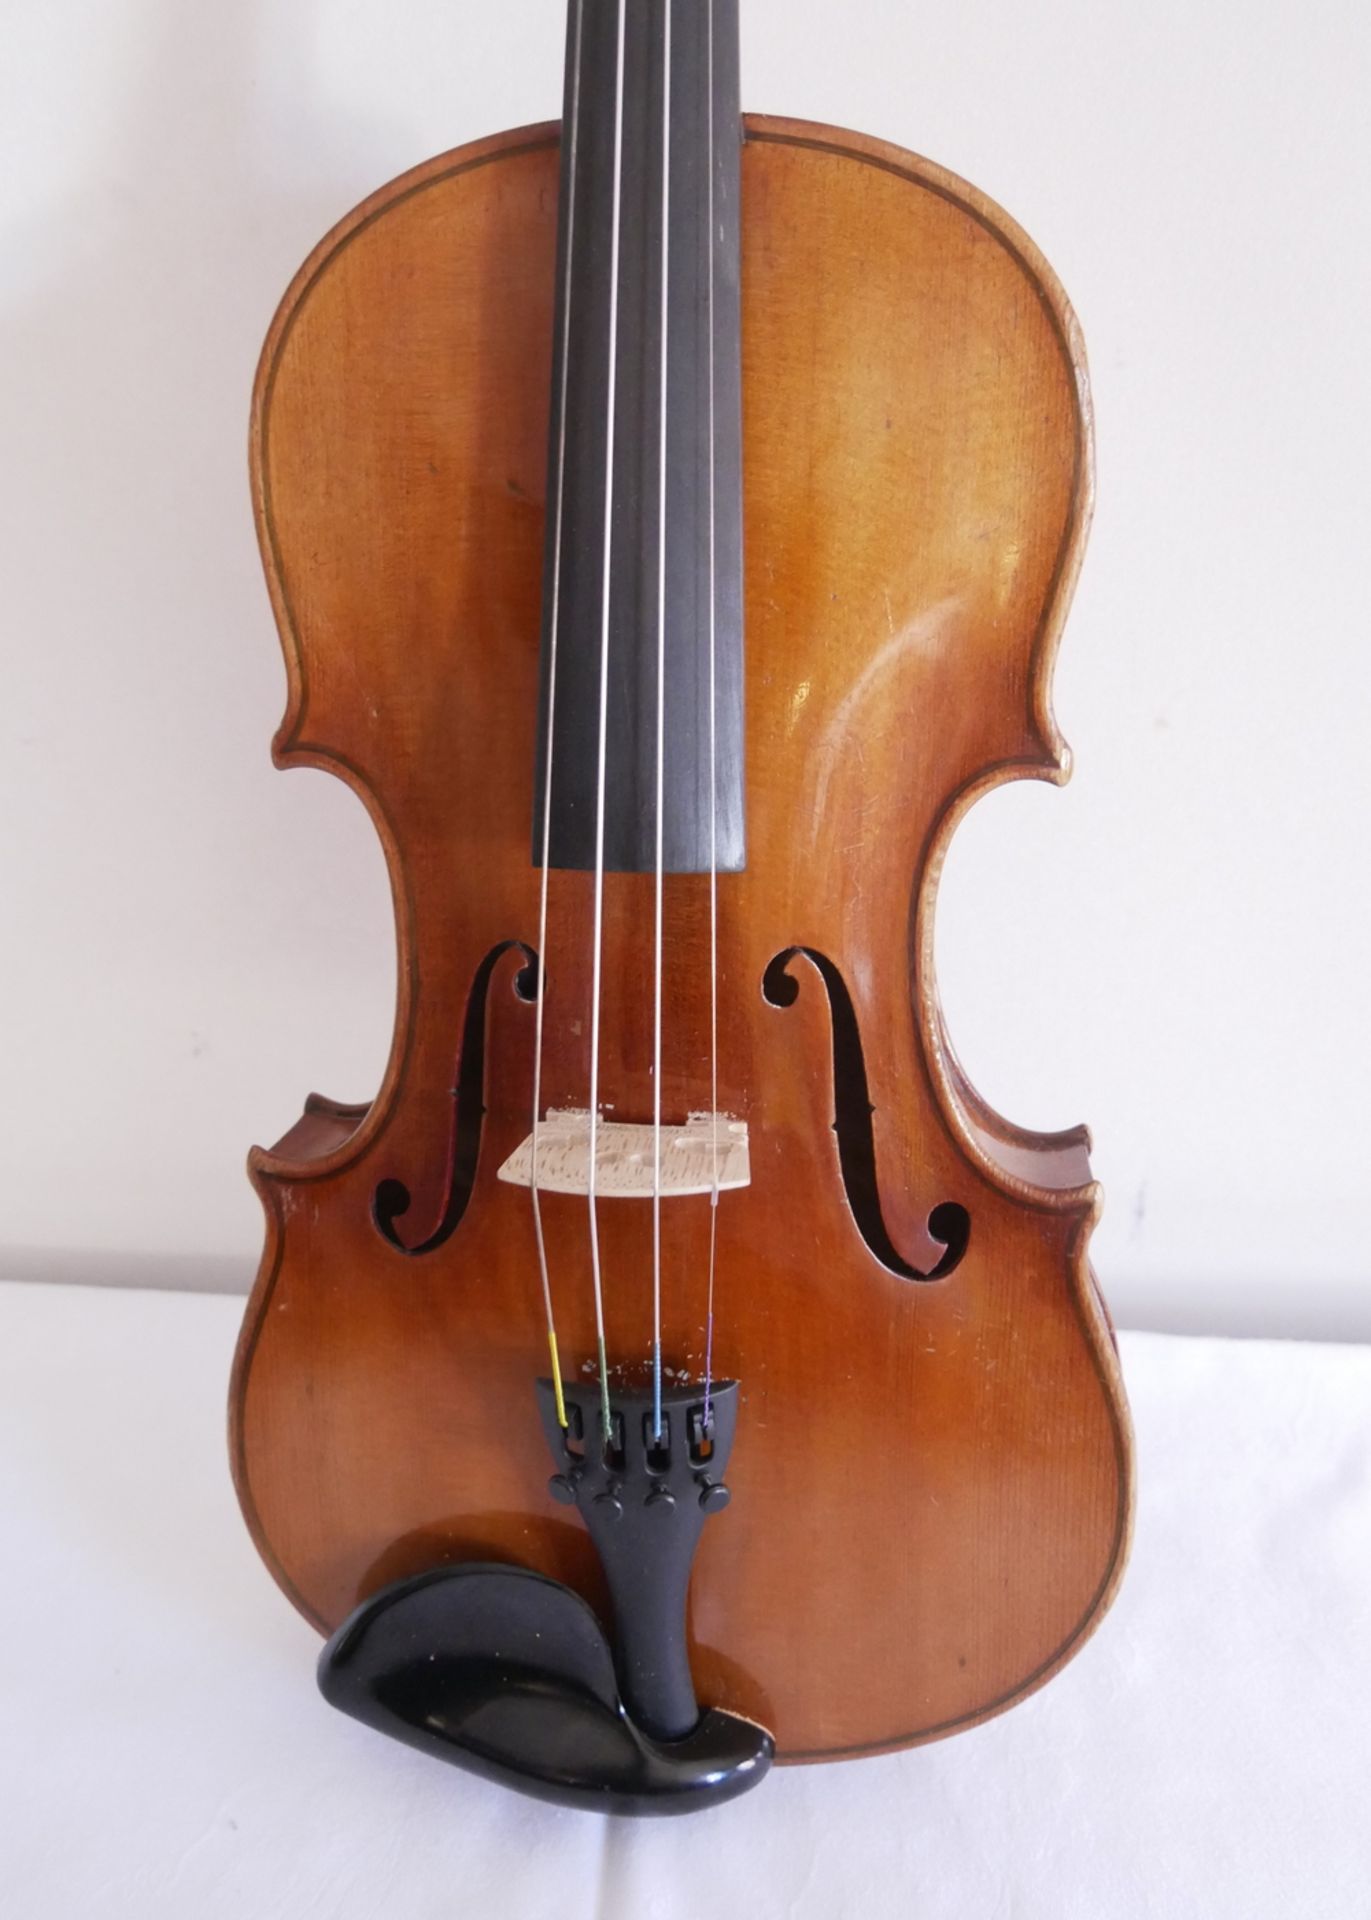 4/4 Violine mit 2 Violinenbögen im Kasten. Gesamtlänge ca. 59 cm, Korpusmaße: unten ca. 20,5 cm, - Bild 3 aus 6